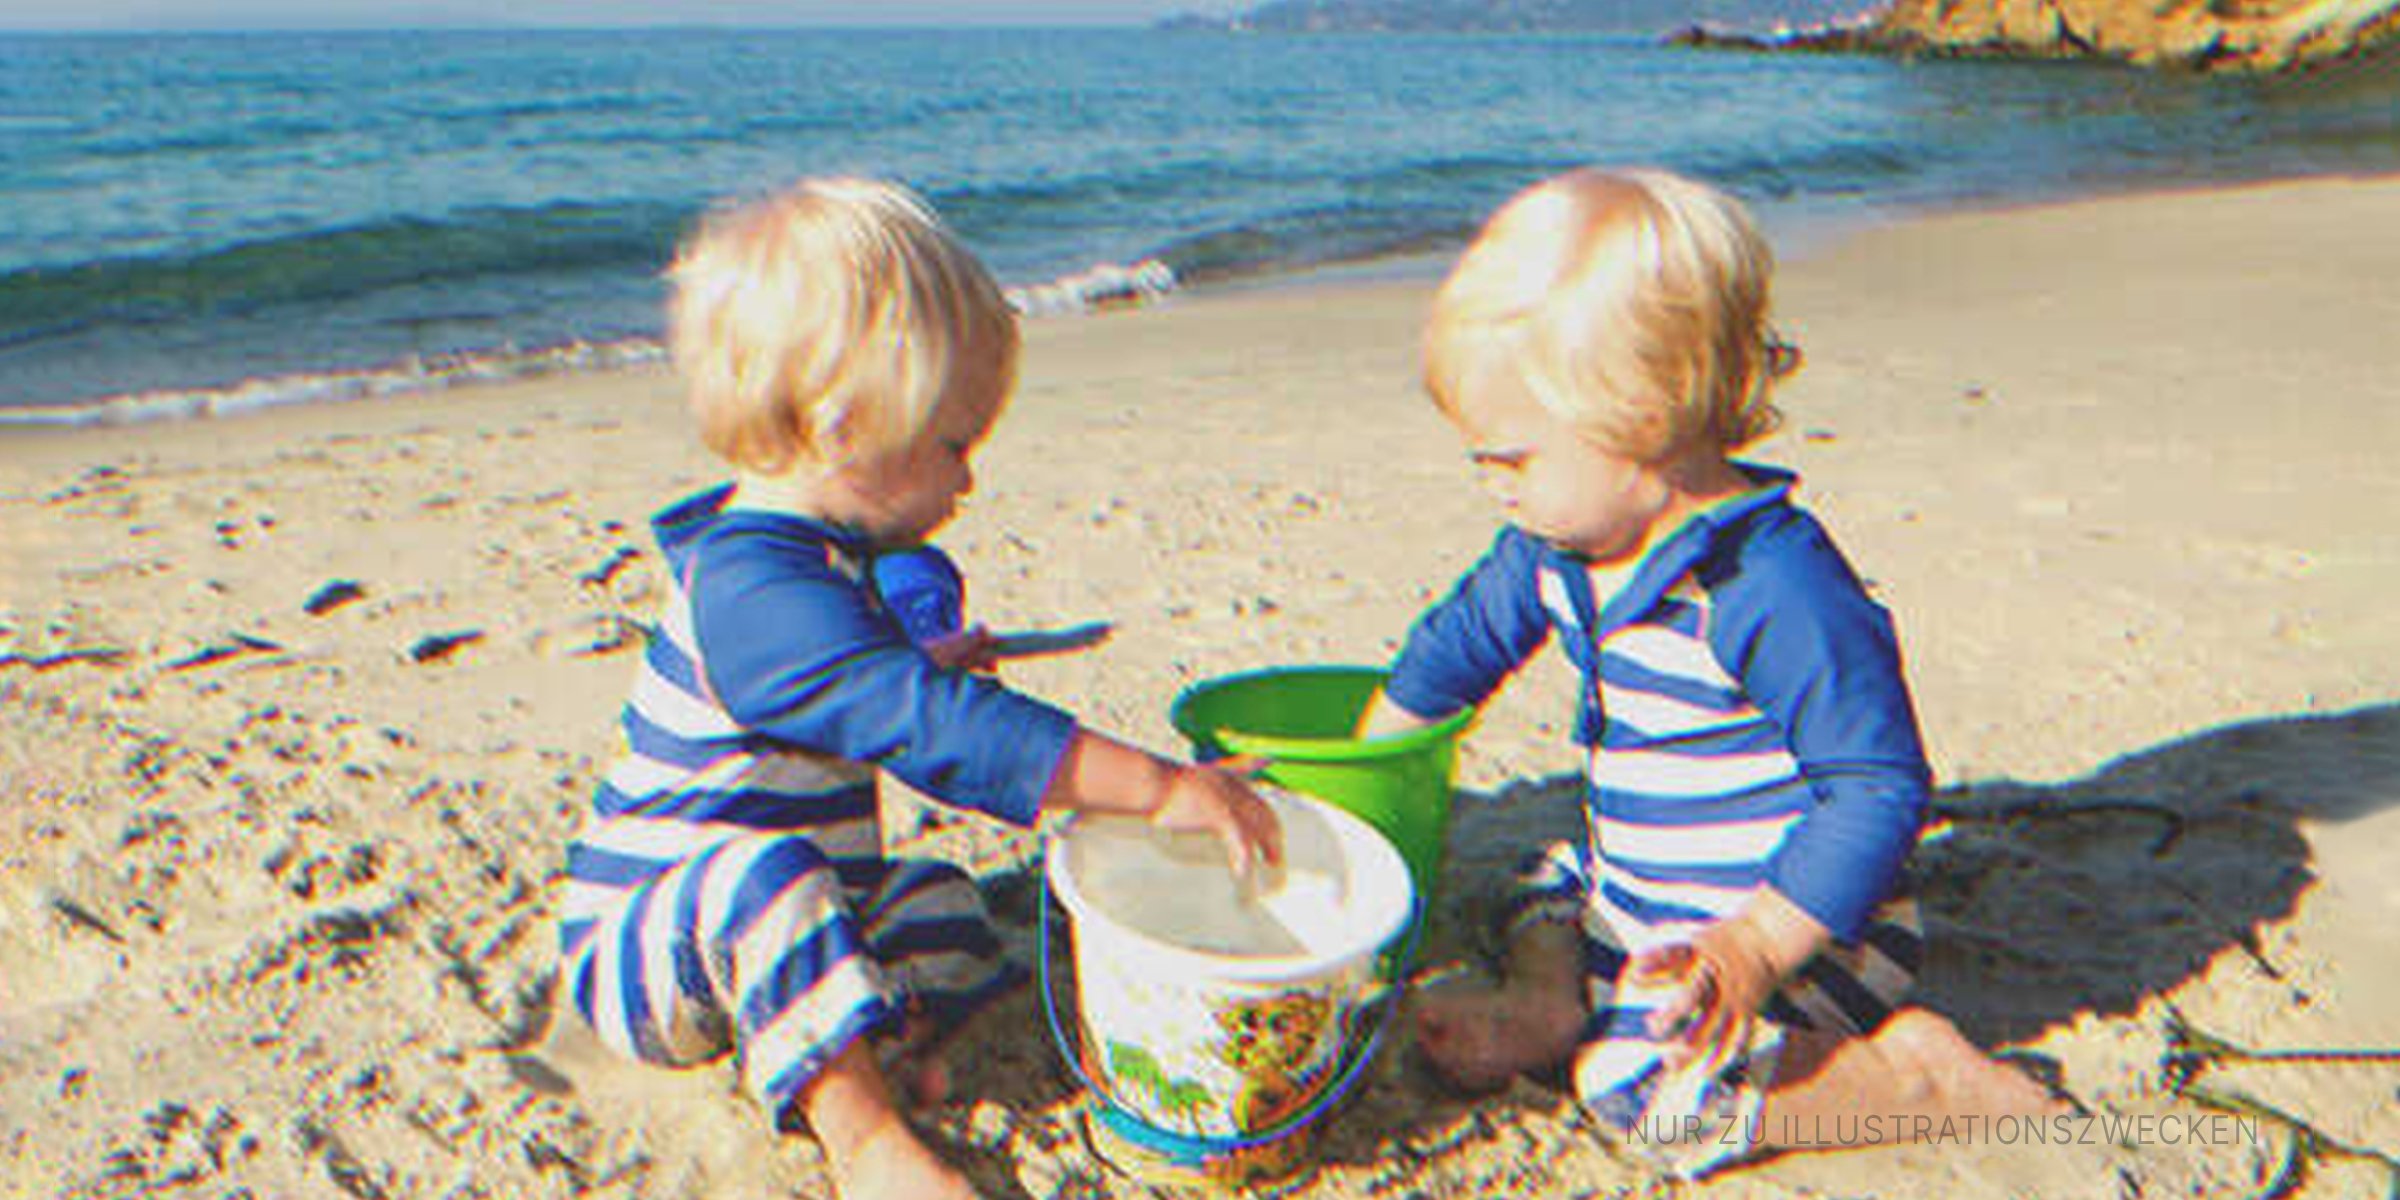 Zwillinge spielen am Strand | Quelle: Getty Images